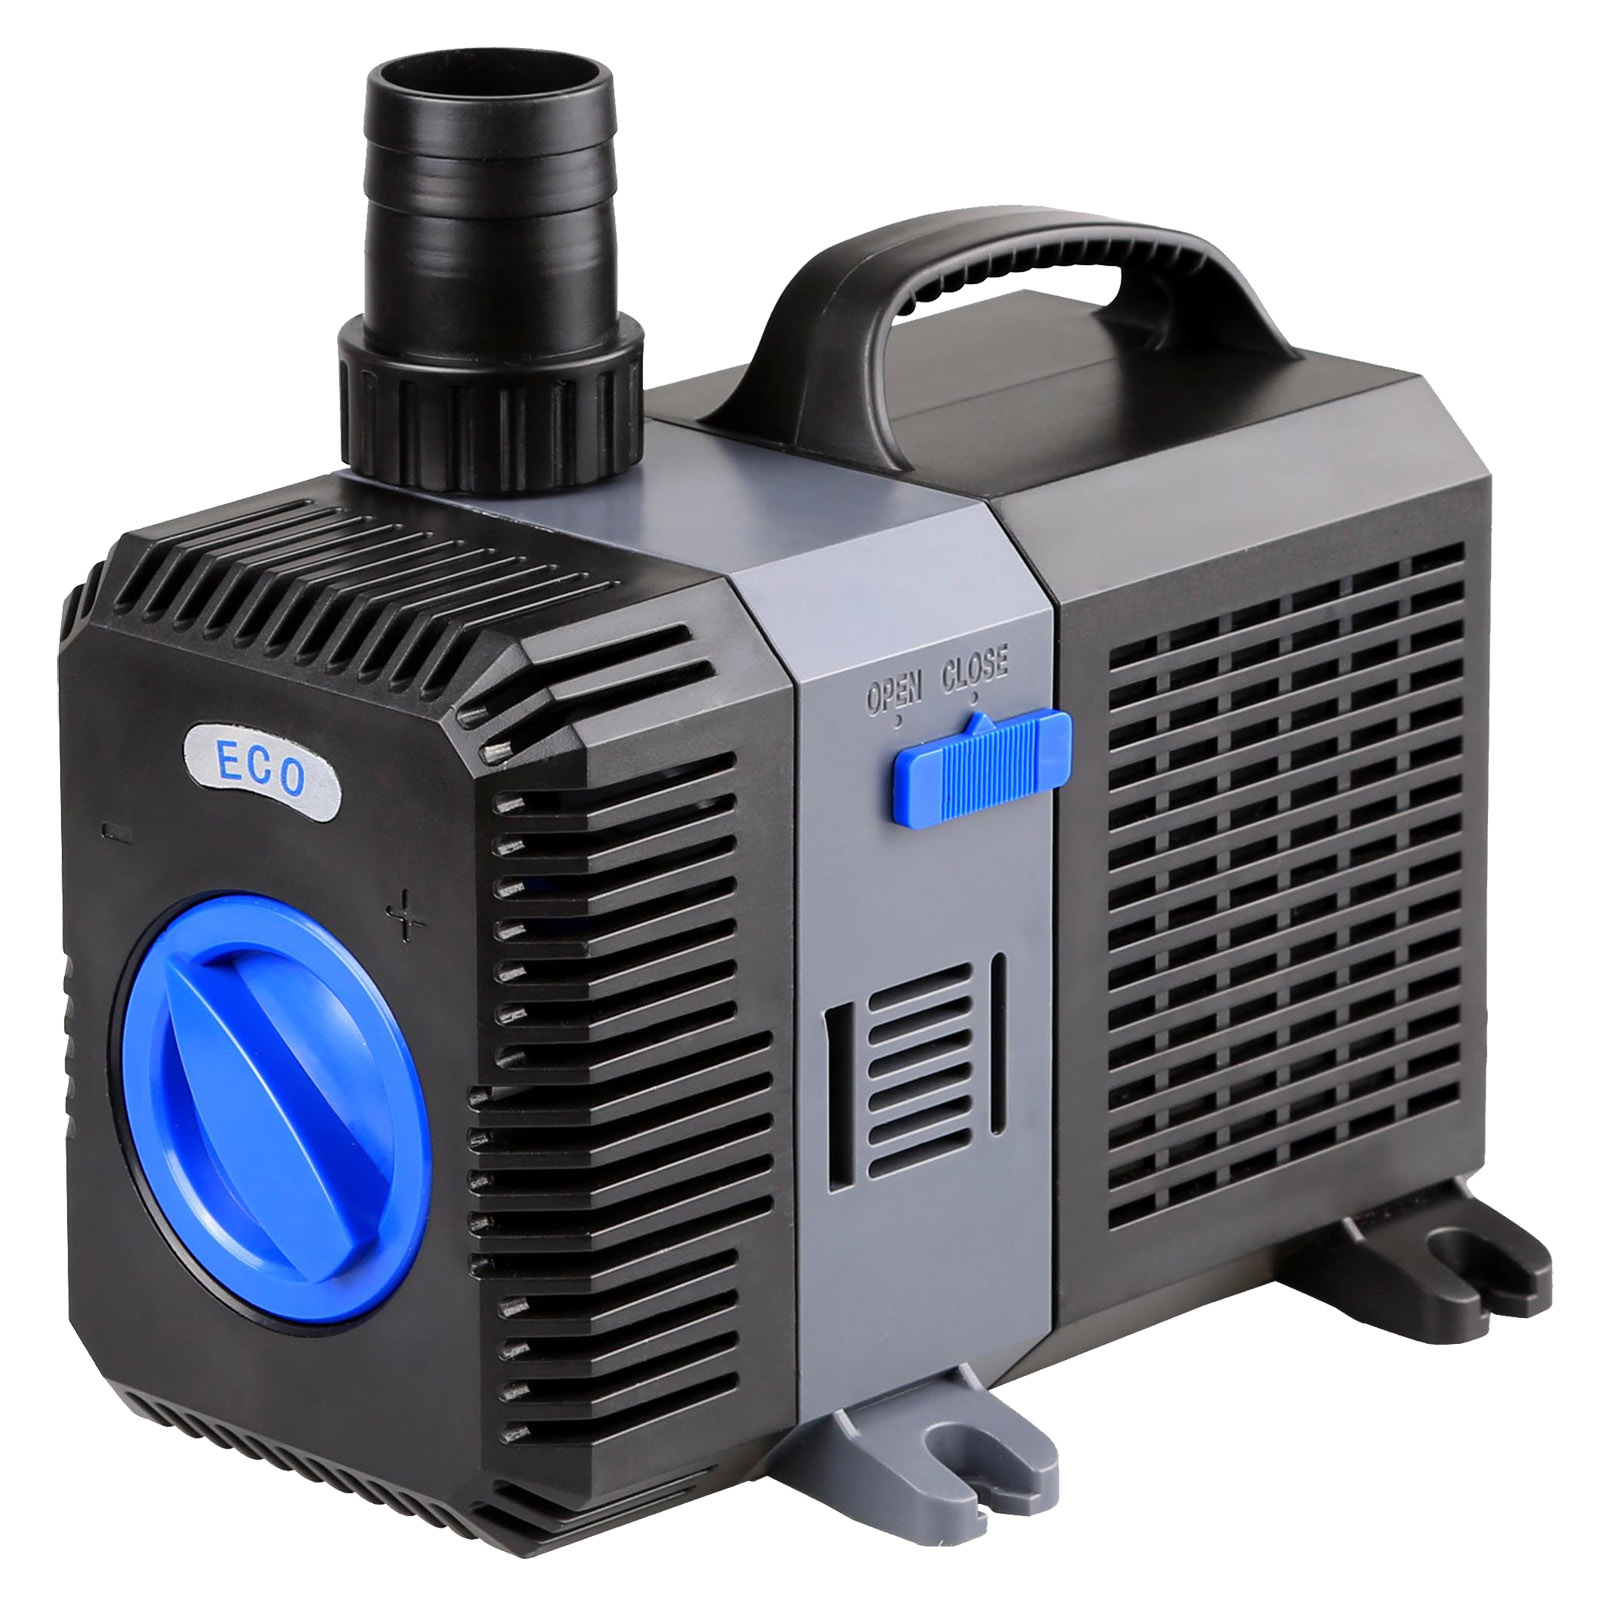 SunSun CTP 5800 SuperEco pompa acquario flusso di pompa acquario 5200L / h  40W